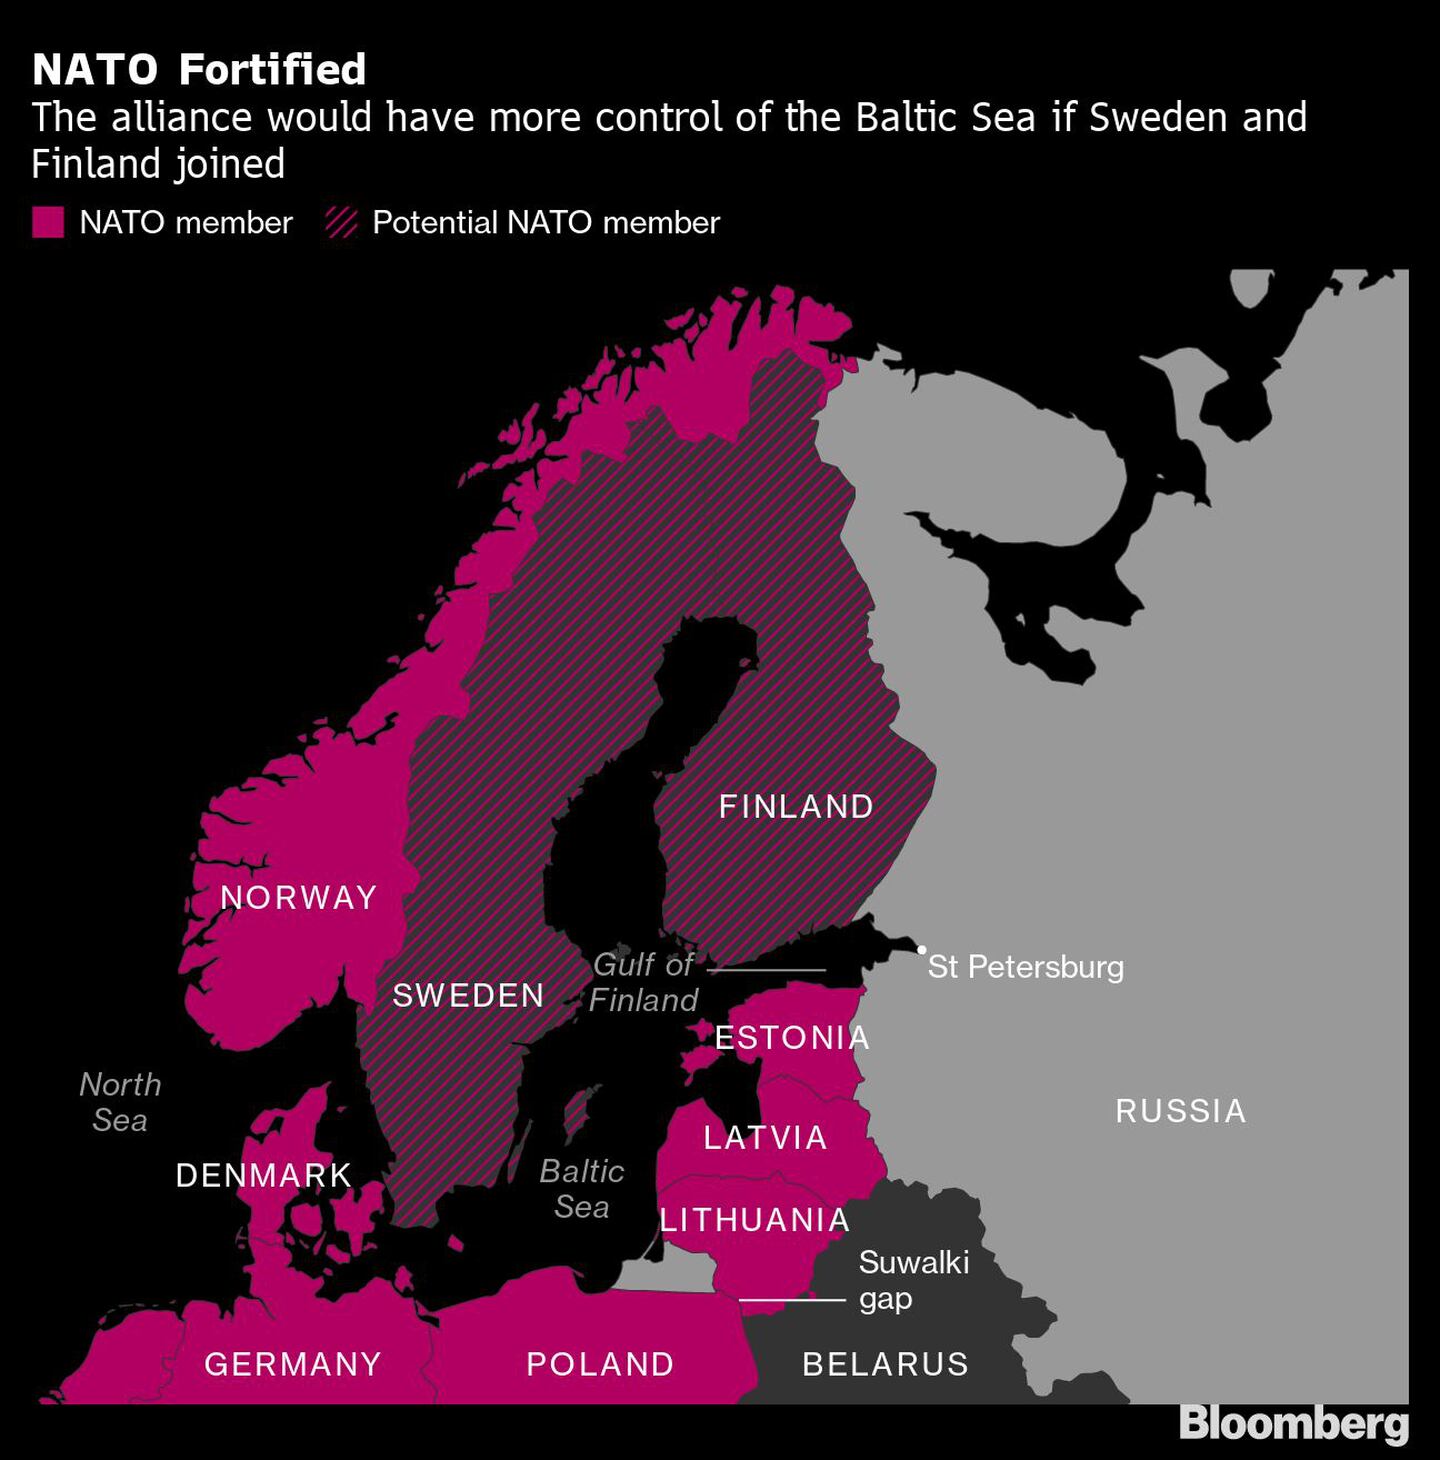 La OTAN se fortalece
La alianza tendría más control del Mar Báltico si Suecia y Finlandia se unen
Rosa: Miembro de la OTAN
Rosa oscuro: Miembro potencial de la OTANdfd